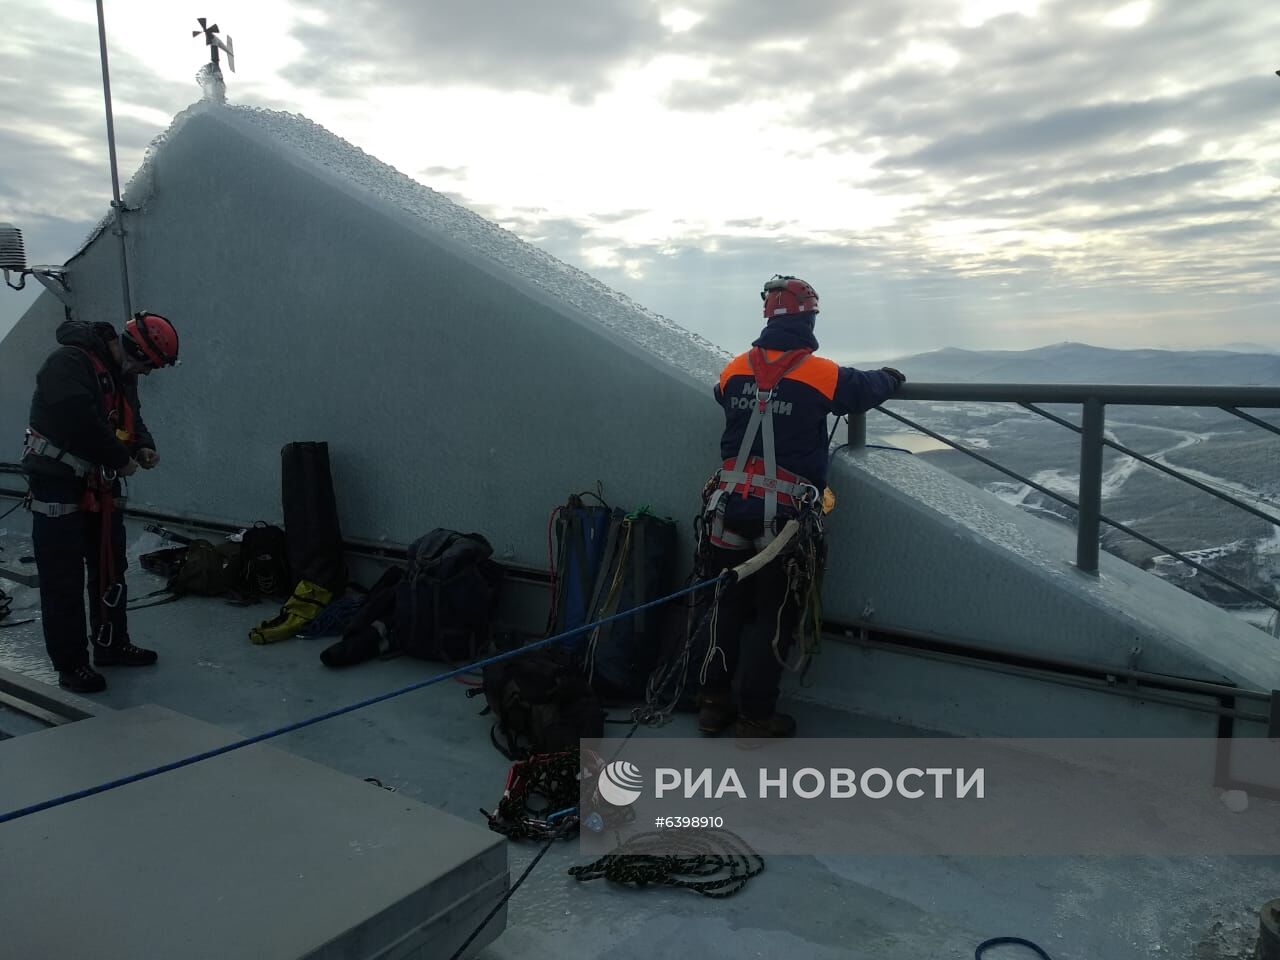 Ванты Русского моста во Владивостоке продолжают освобождать ото льда